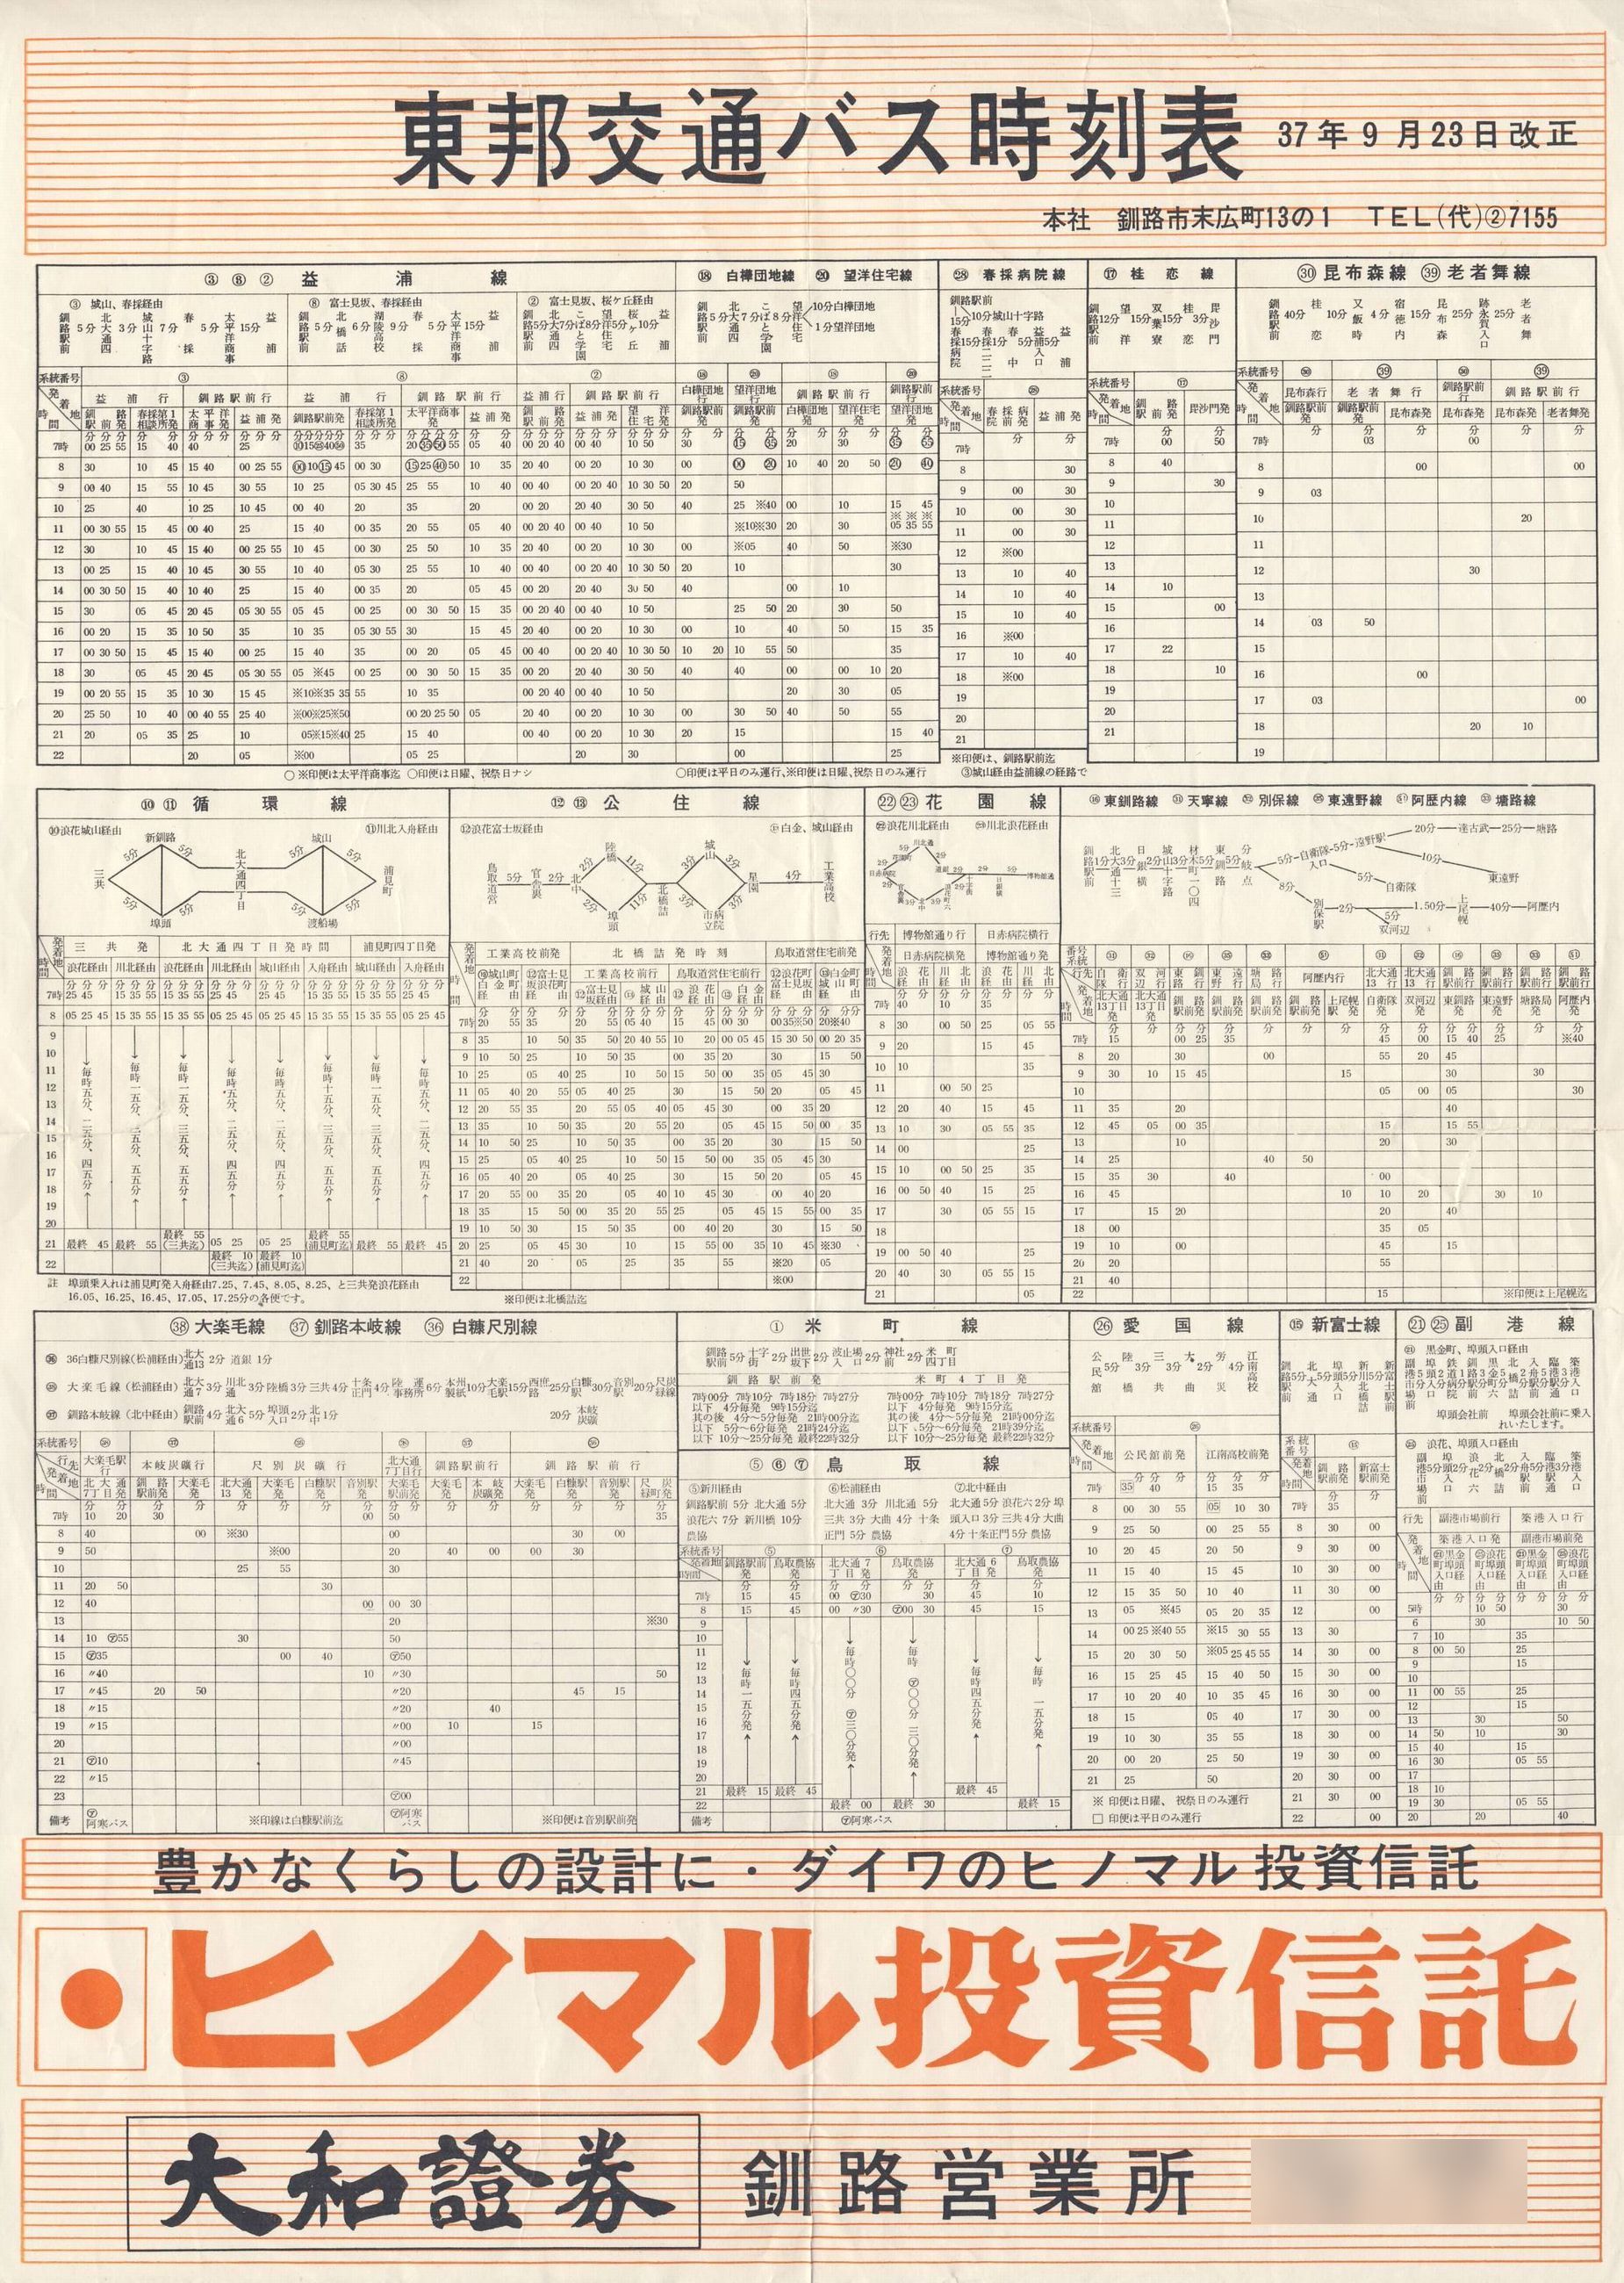 1962-09-23改正_東邦交通_バス時刻表